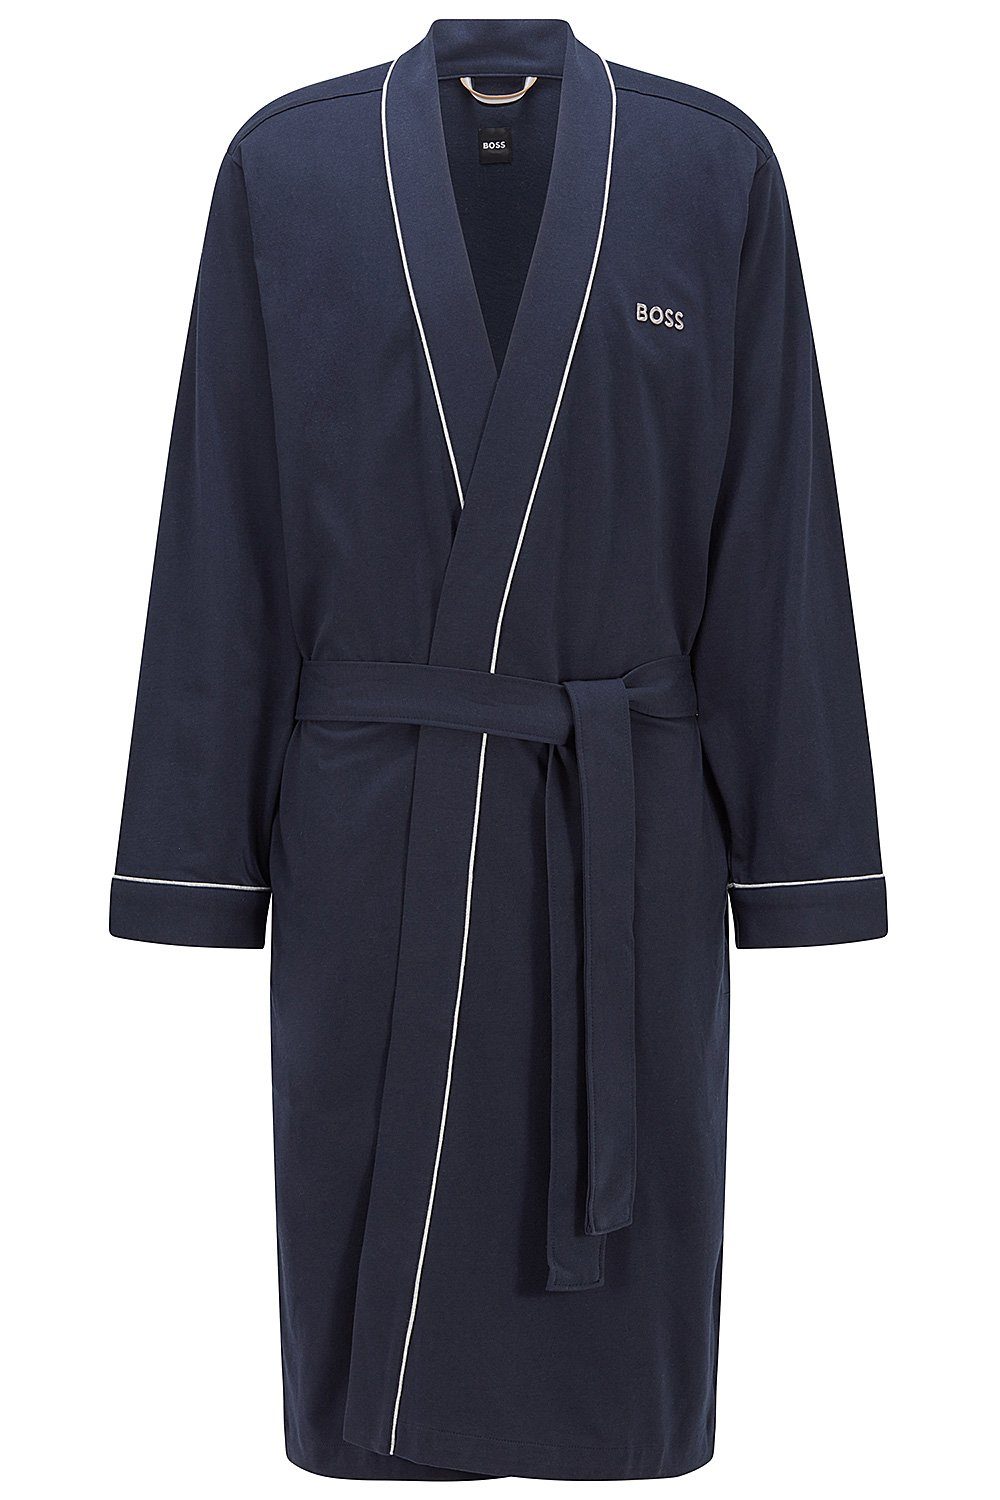 BOSS Herrenbademantel Kimono BM, Baumwolle, Taillengürtel, Morgenmantel aus Baumwolle Dark Blue (403) | Herren Bademäntel